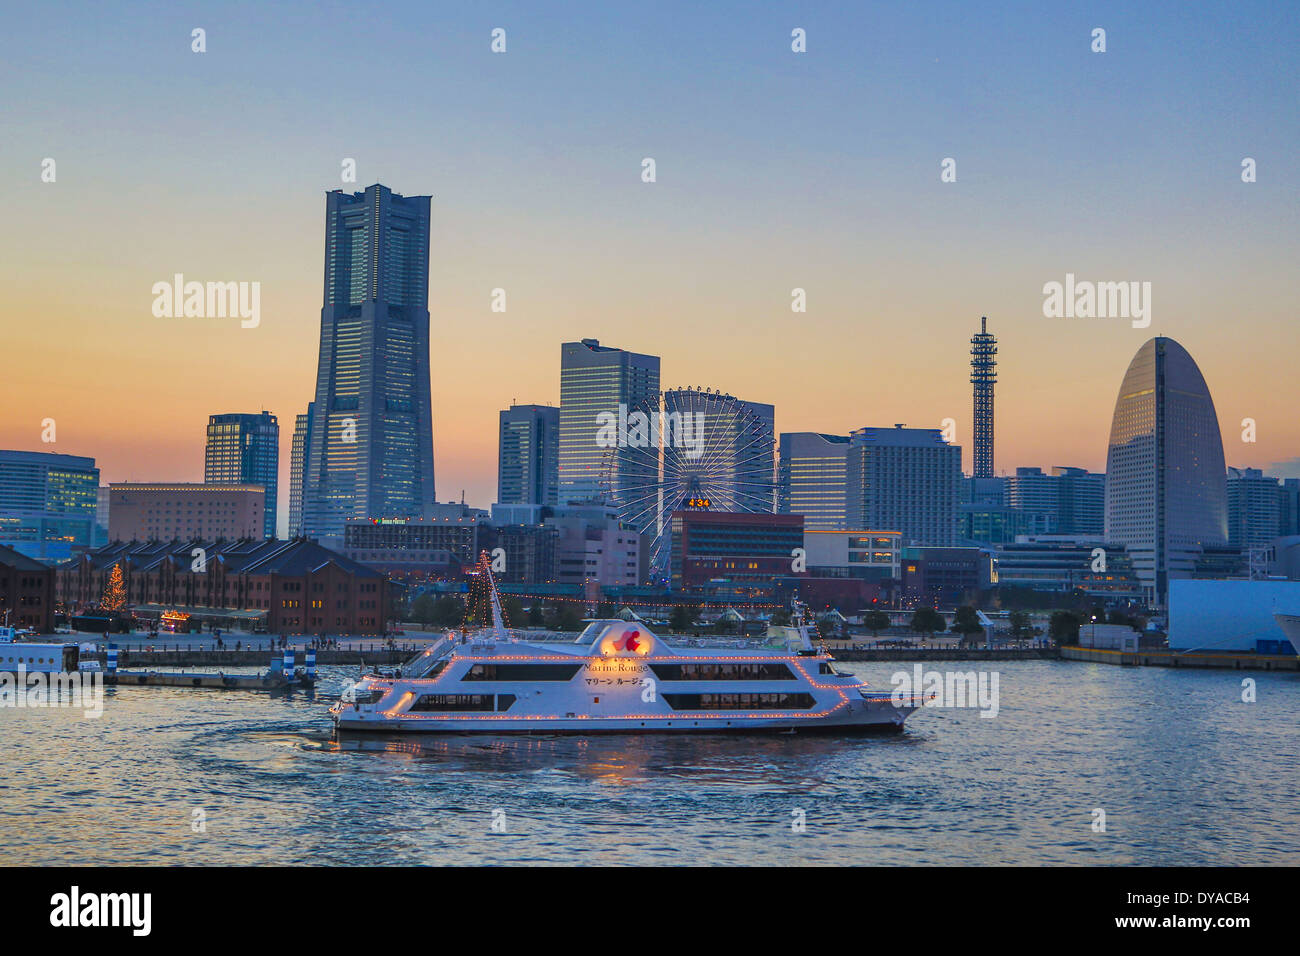 Le Japon, l'Asie, Yokohama, monument, tour, l'architecture, Bay, ville, colorée, panorama, paysage, coucher du soleil, touristique, voyage, roue Banque D'Images